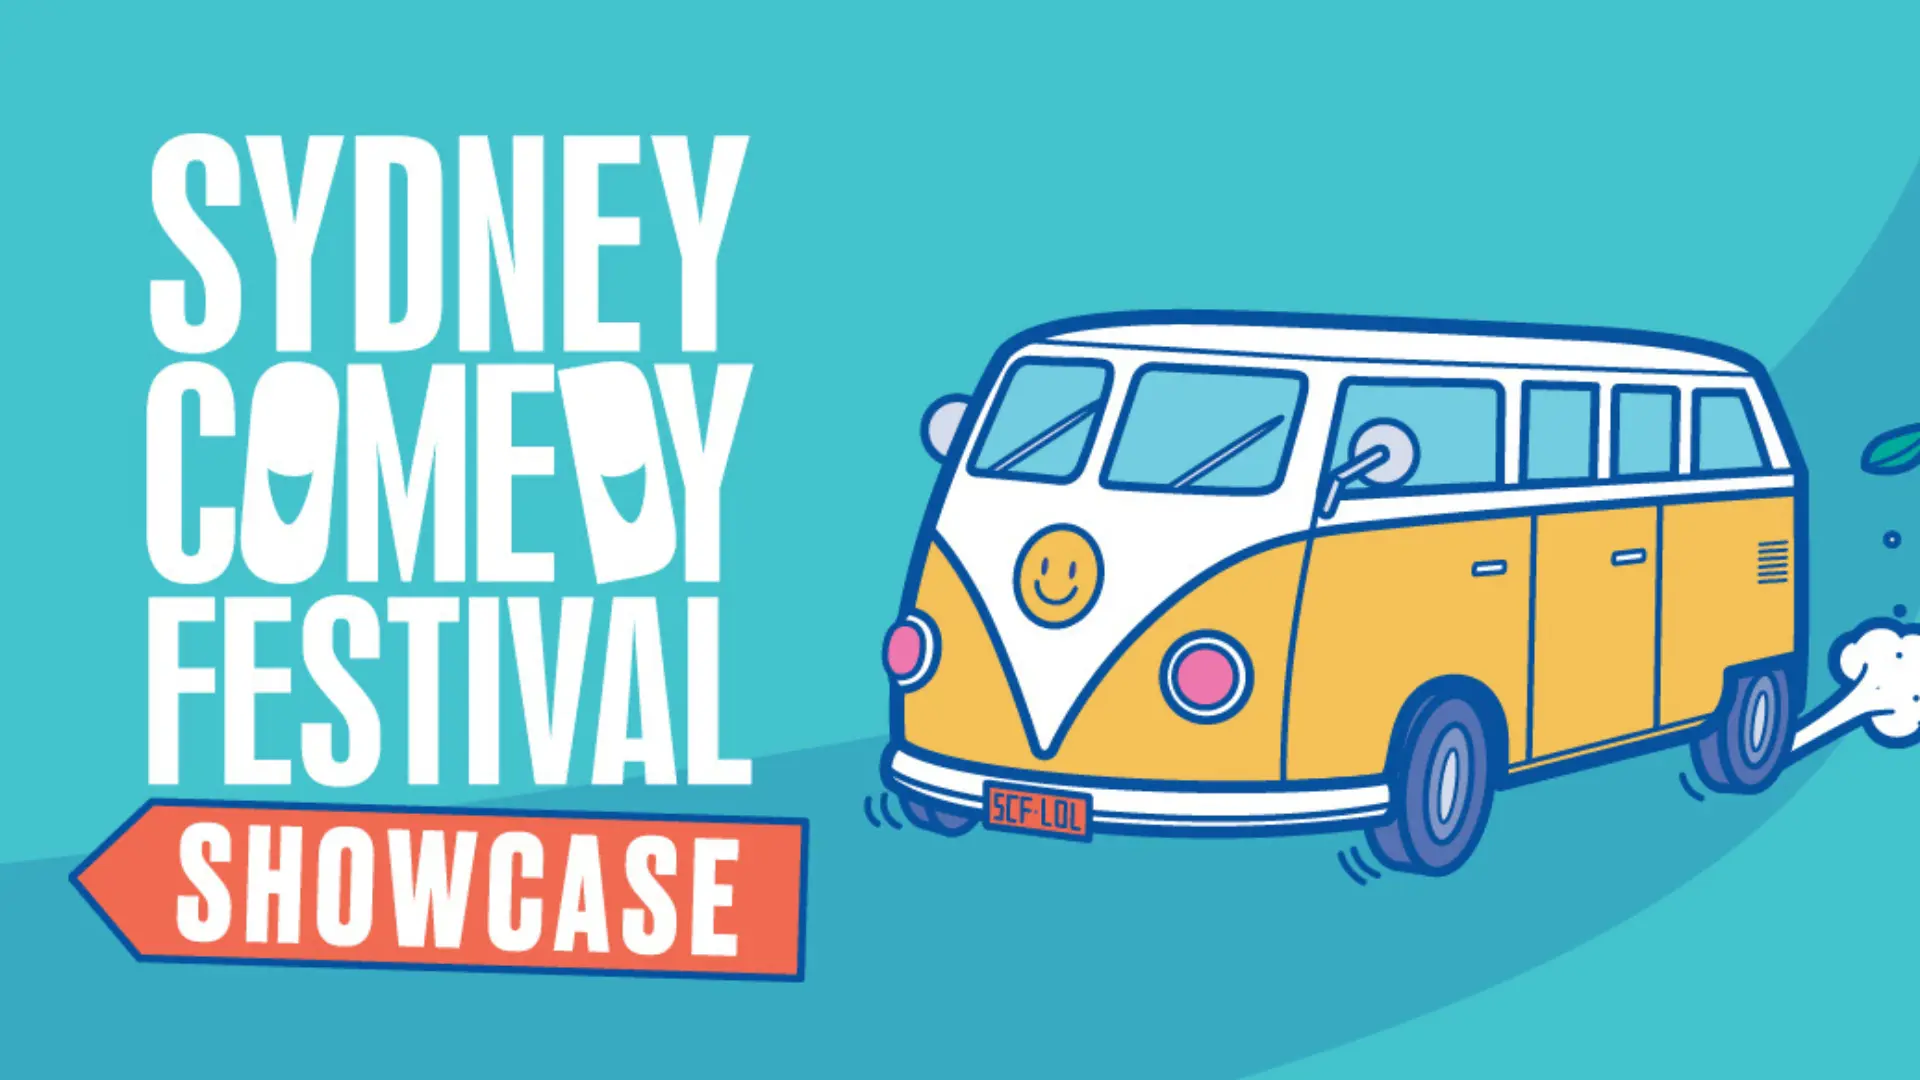 Sydney Comedy Festival Showcase Tour